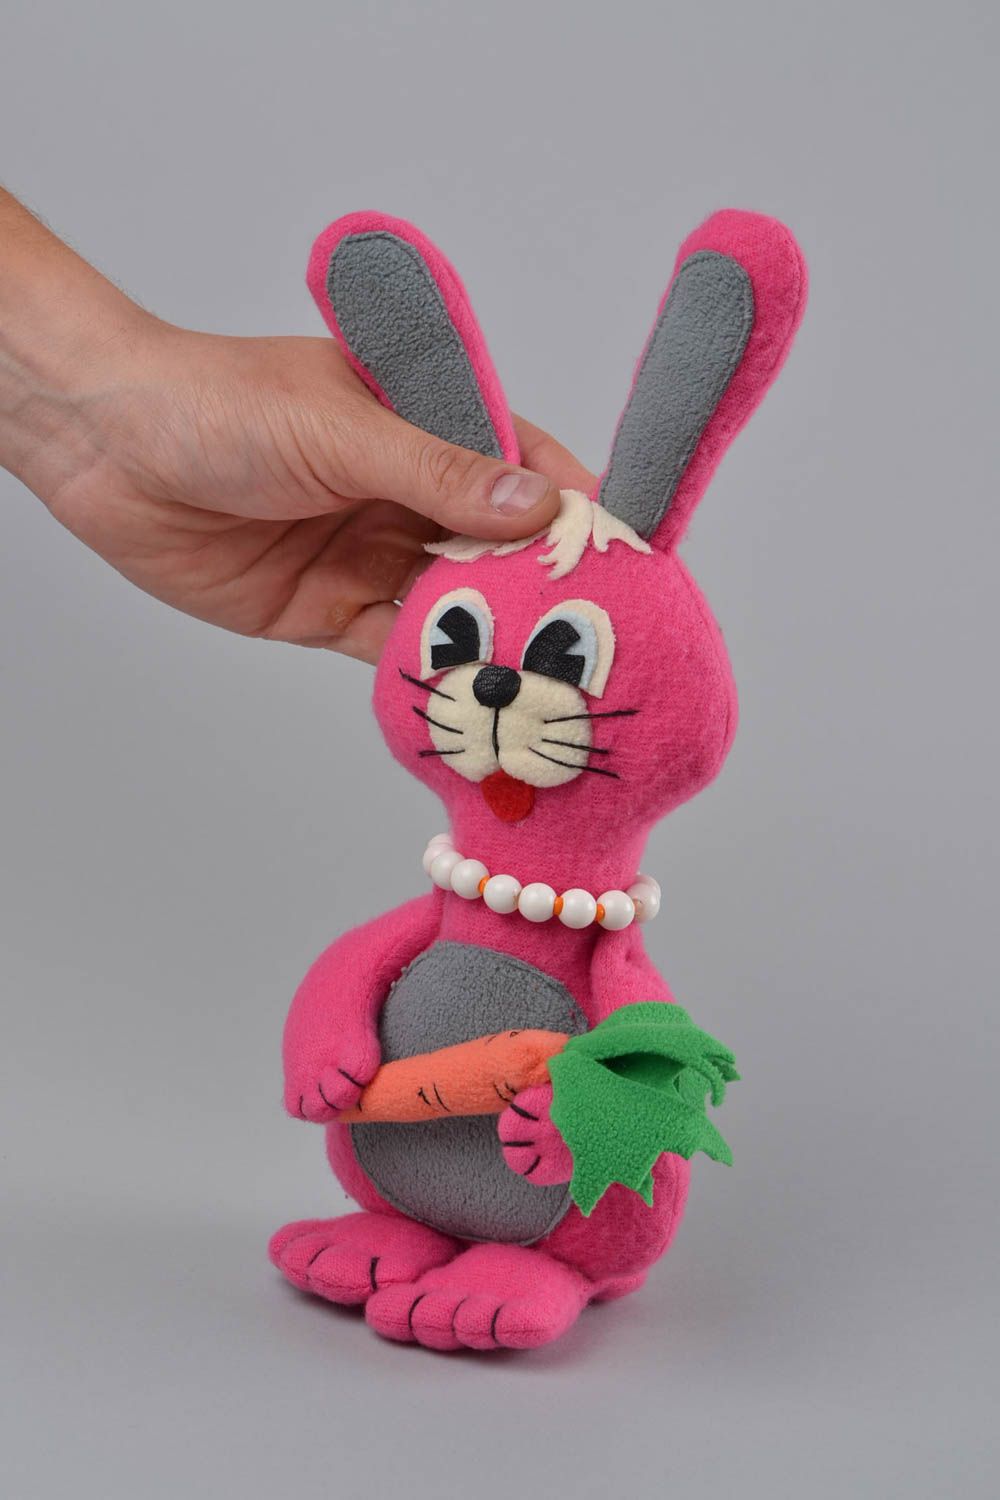 Rosa handmade Kuscheltier Hase aus Fleece für Kinder originell schön Geschenk foto 2